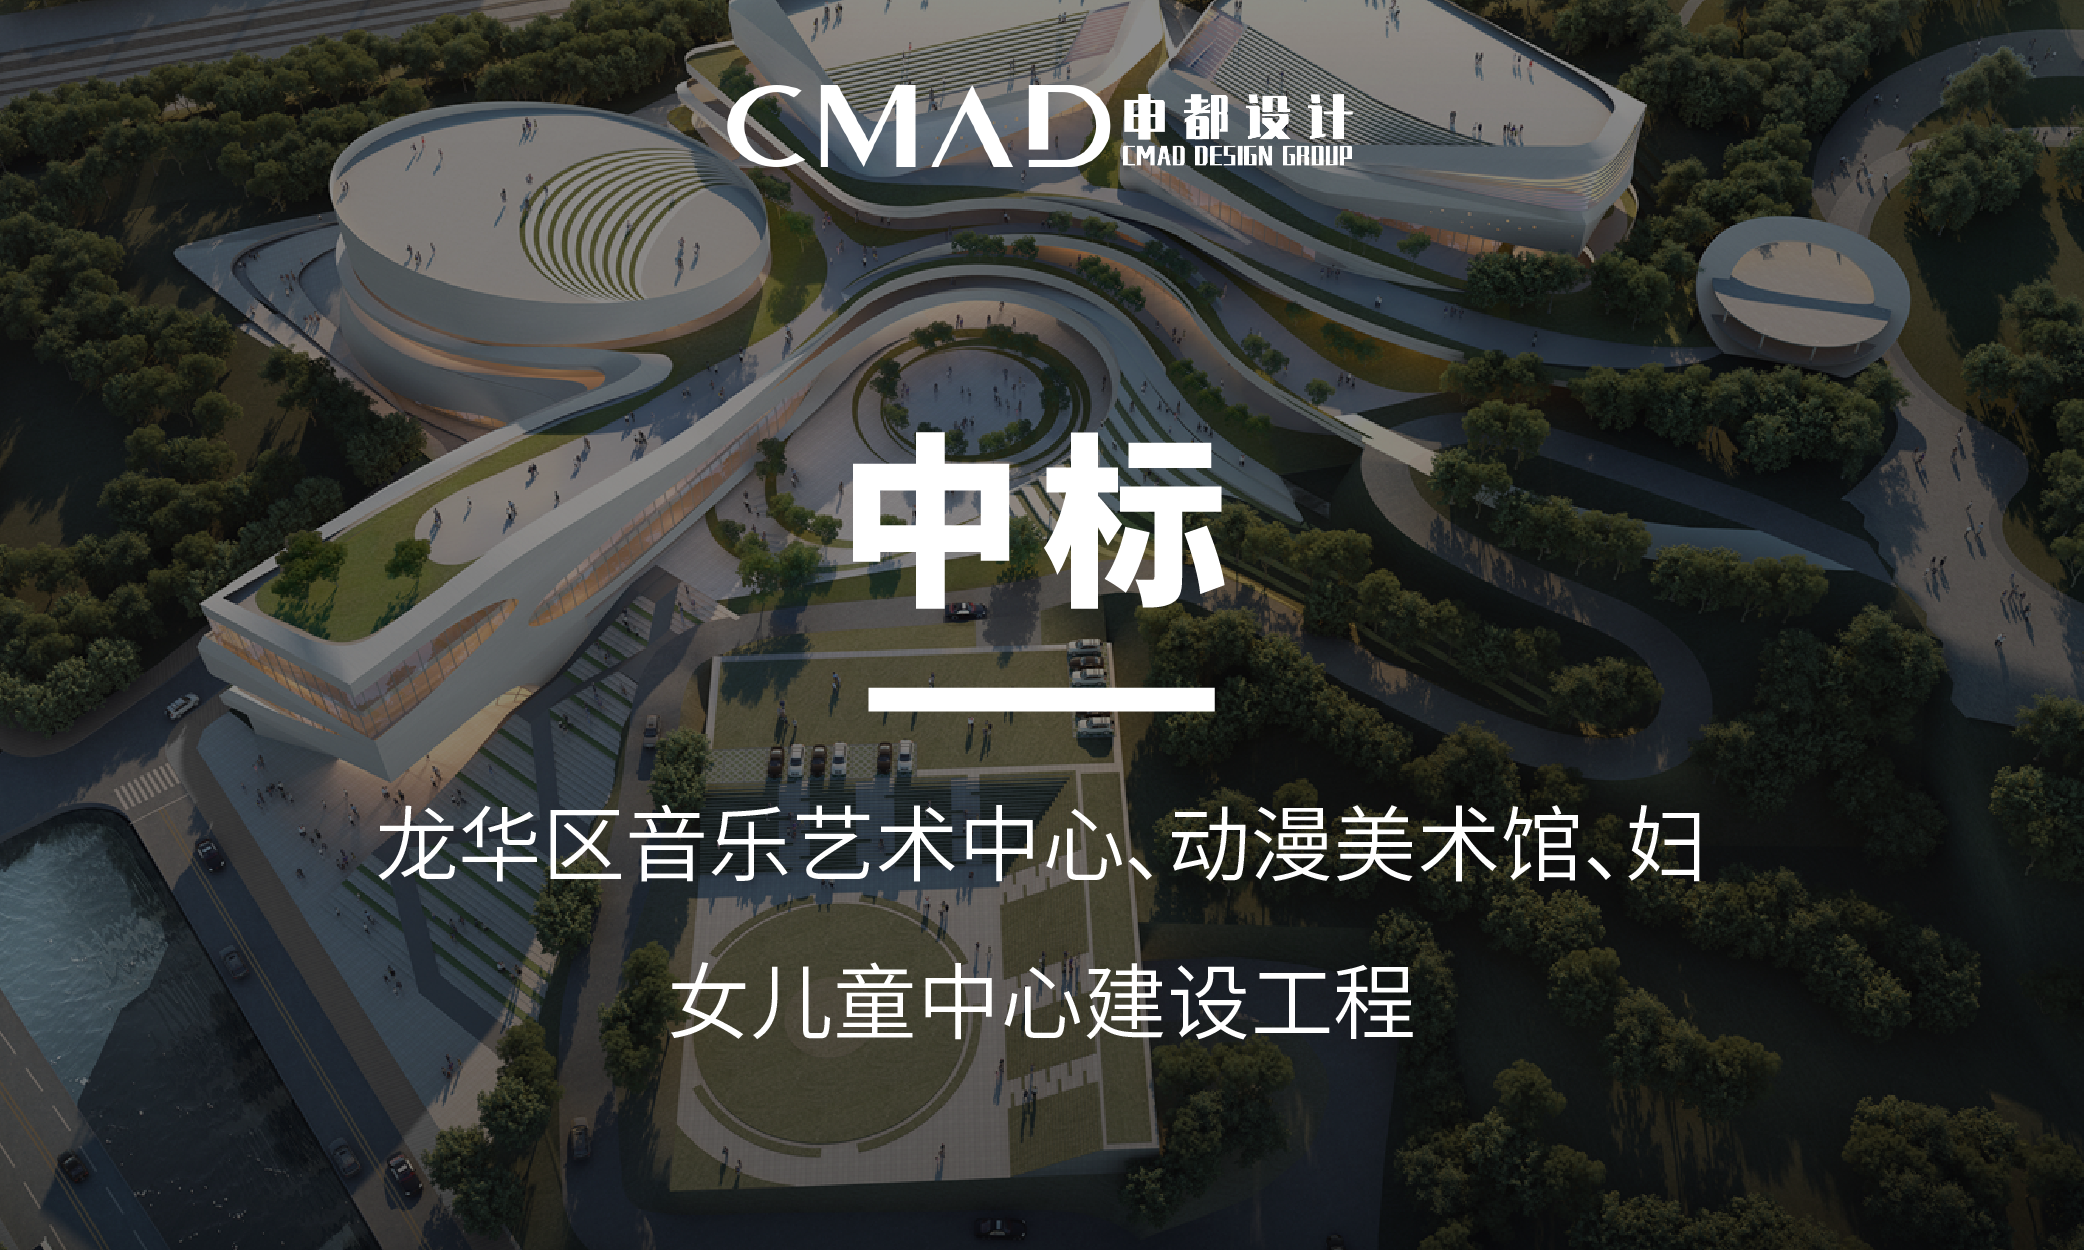 CMAD喜讯 | 申都设计成功中标龙华区音乐艺术中心、动漫美术馆、妇女儿童中心建设工程